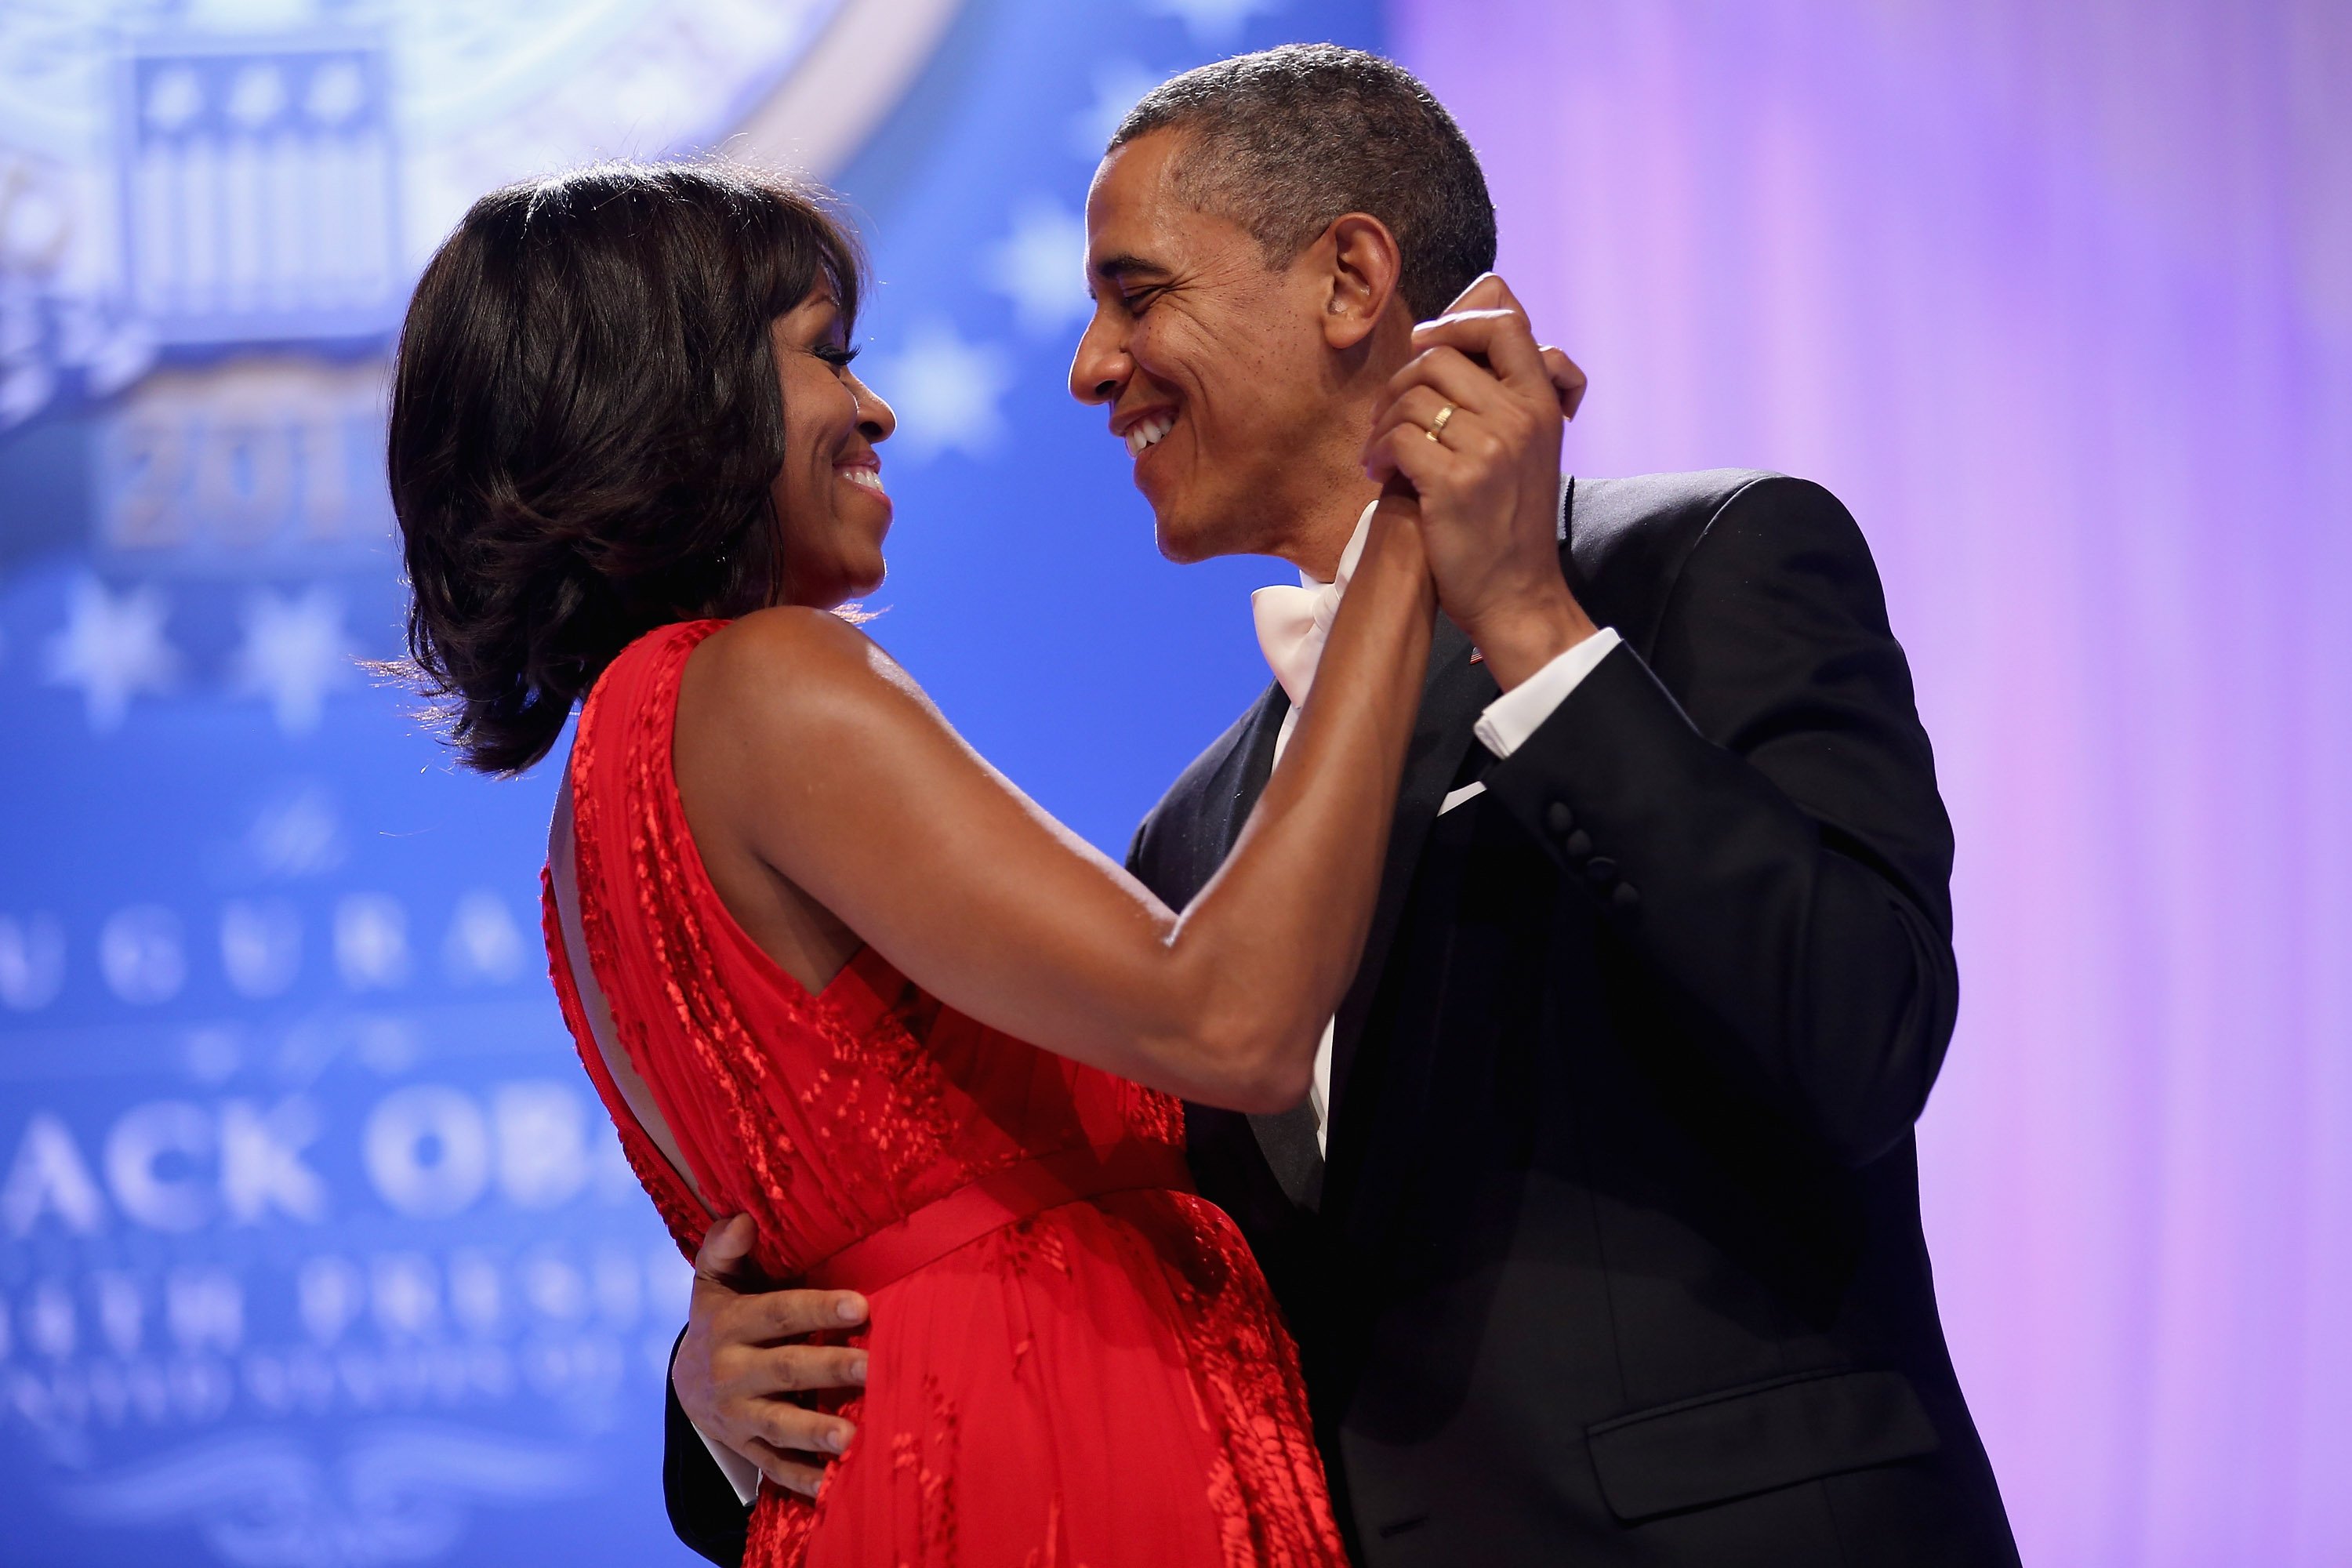 US-Präsident Barack Obama und First Lady Michelle Obama tanzen zusammen während des Eröffnungsballs des Oberbefehlshabers im Walter Washington Convention Center am 21. Januar 2013 in Washington, DC. | Quelle: Getty Images